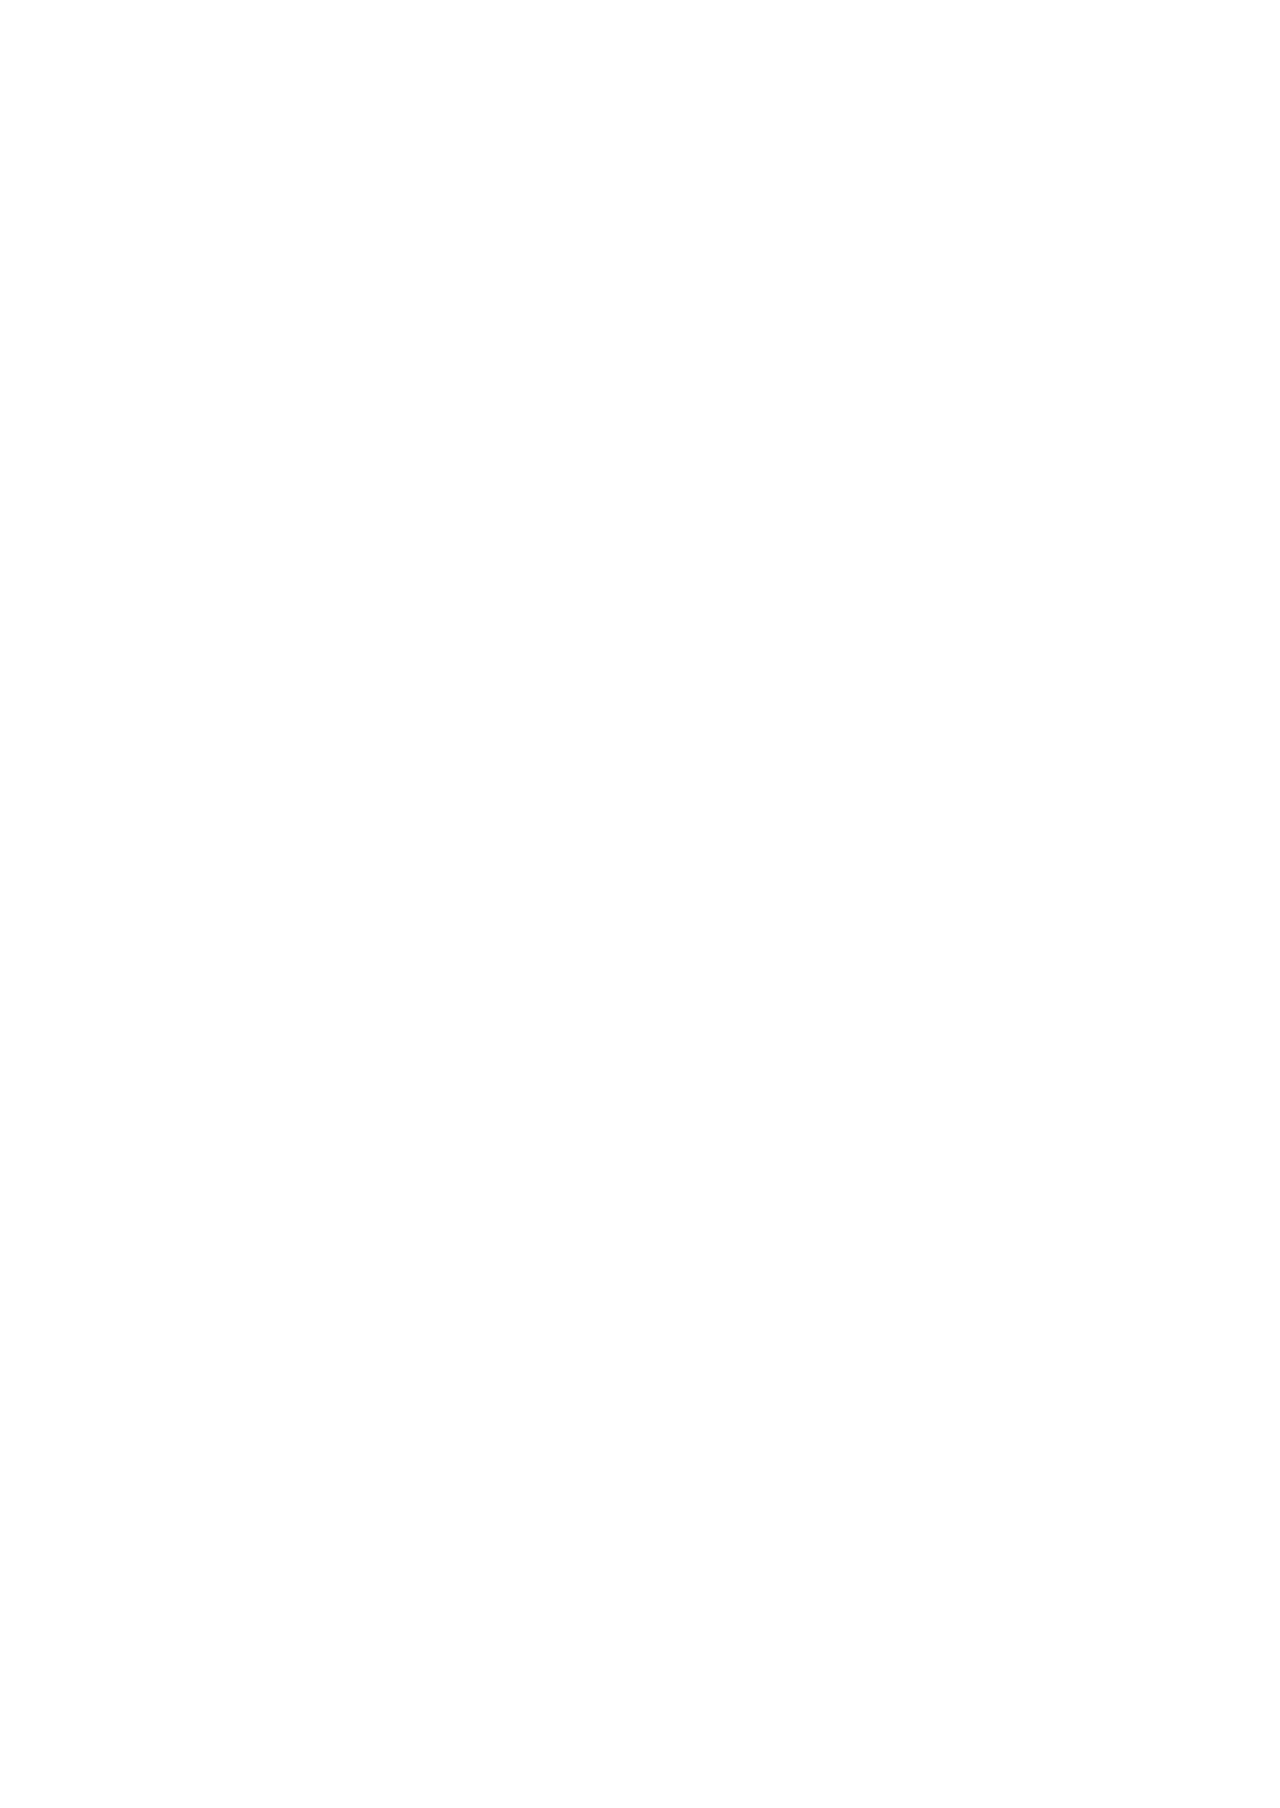 (ショタフェス10) [コンマミオン、Pfactory (よろず)] ショタセクステット3 [DL版]